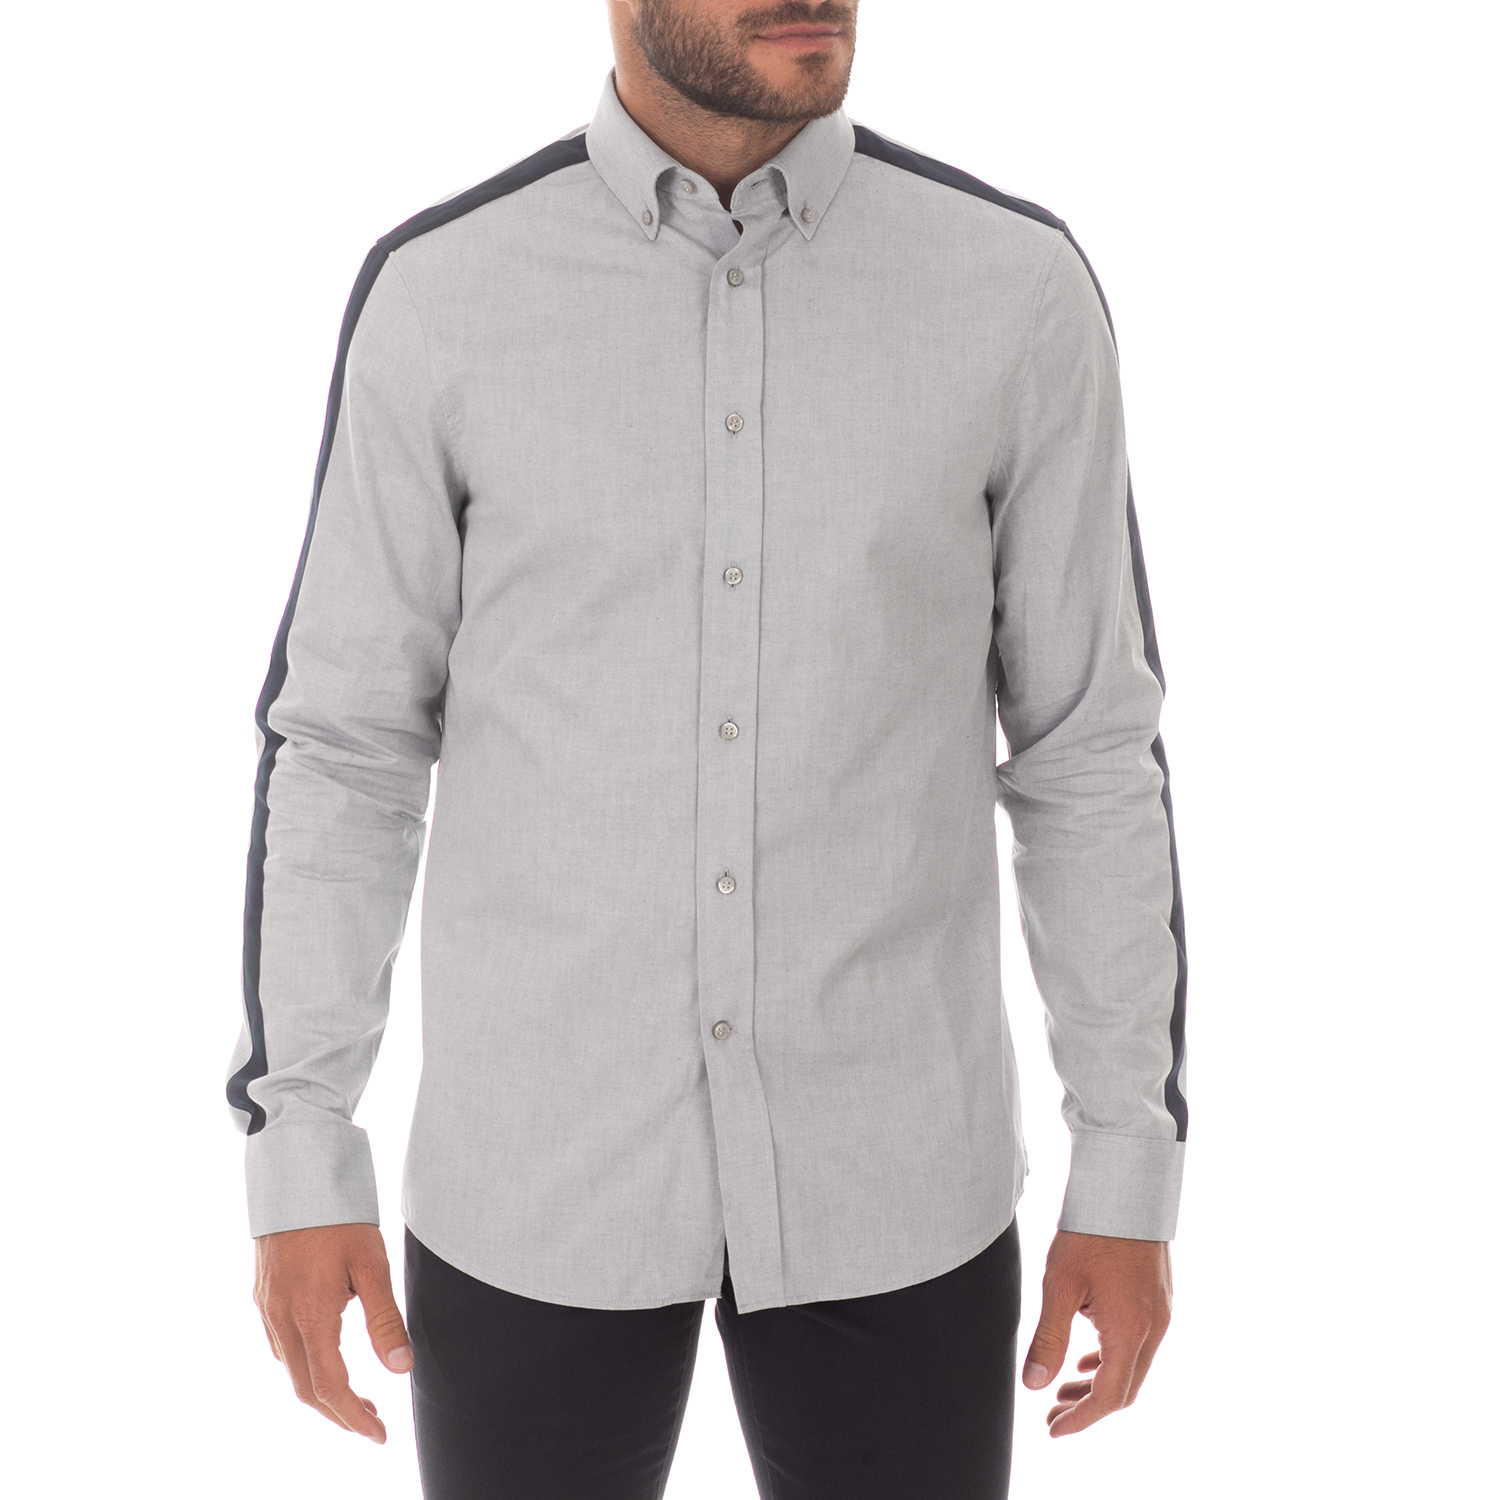 Ανδρικά/Ρούχα/Πουκάμισα/Μακρυμάνικα CK - Ανδρικό πουκάμισο CK REFINED OXFORD γκρι